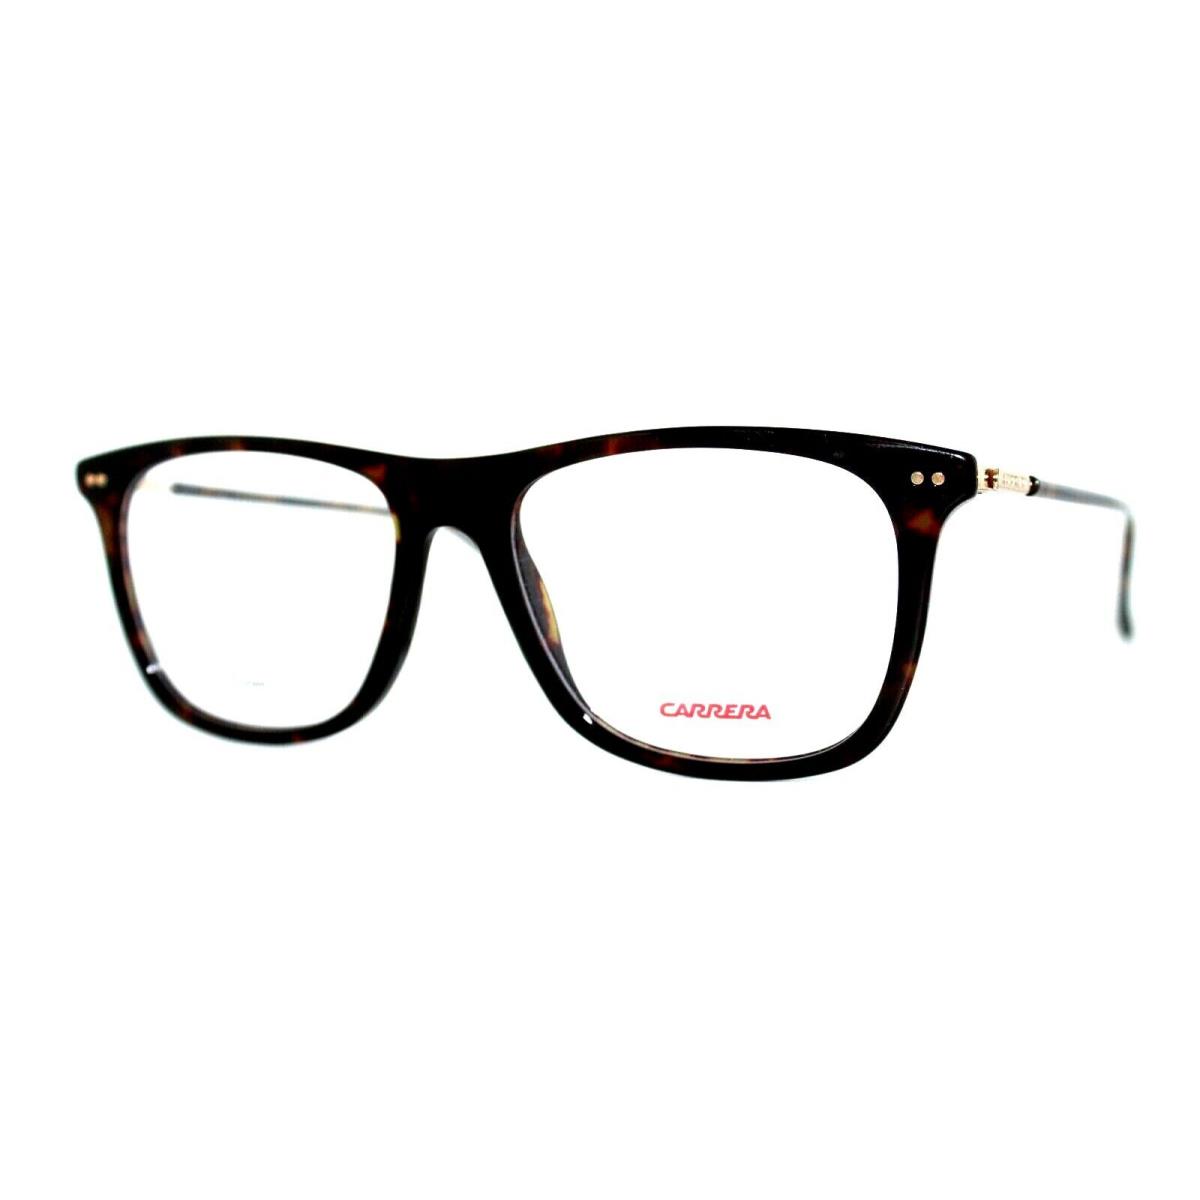 Carrera 144/V 086 Tortoise Eyeglasses Frames 52-17-145MM W/case - Frame: